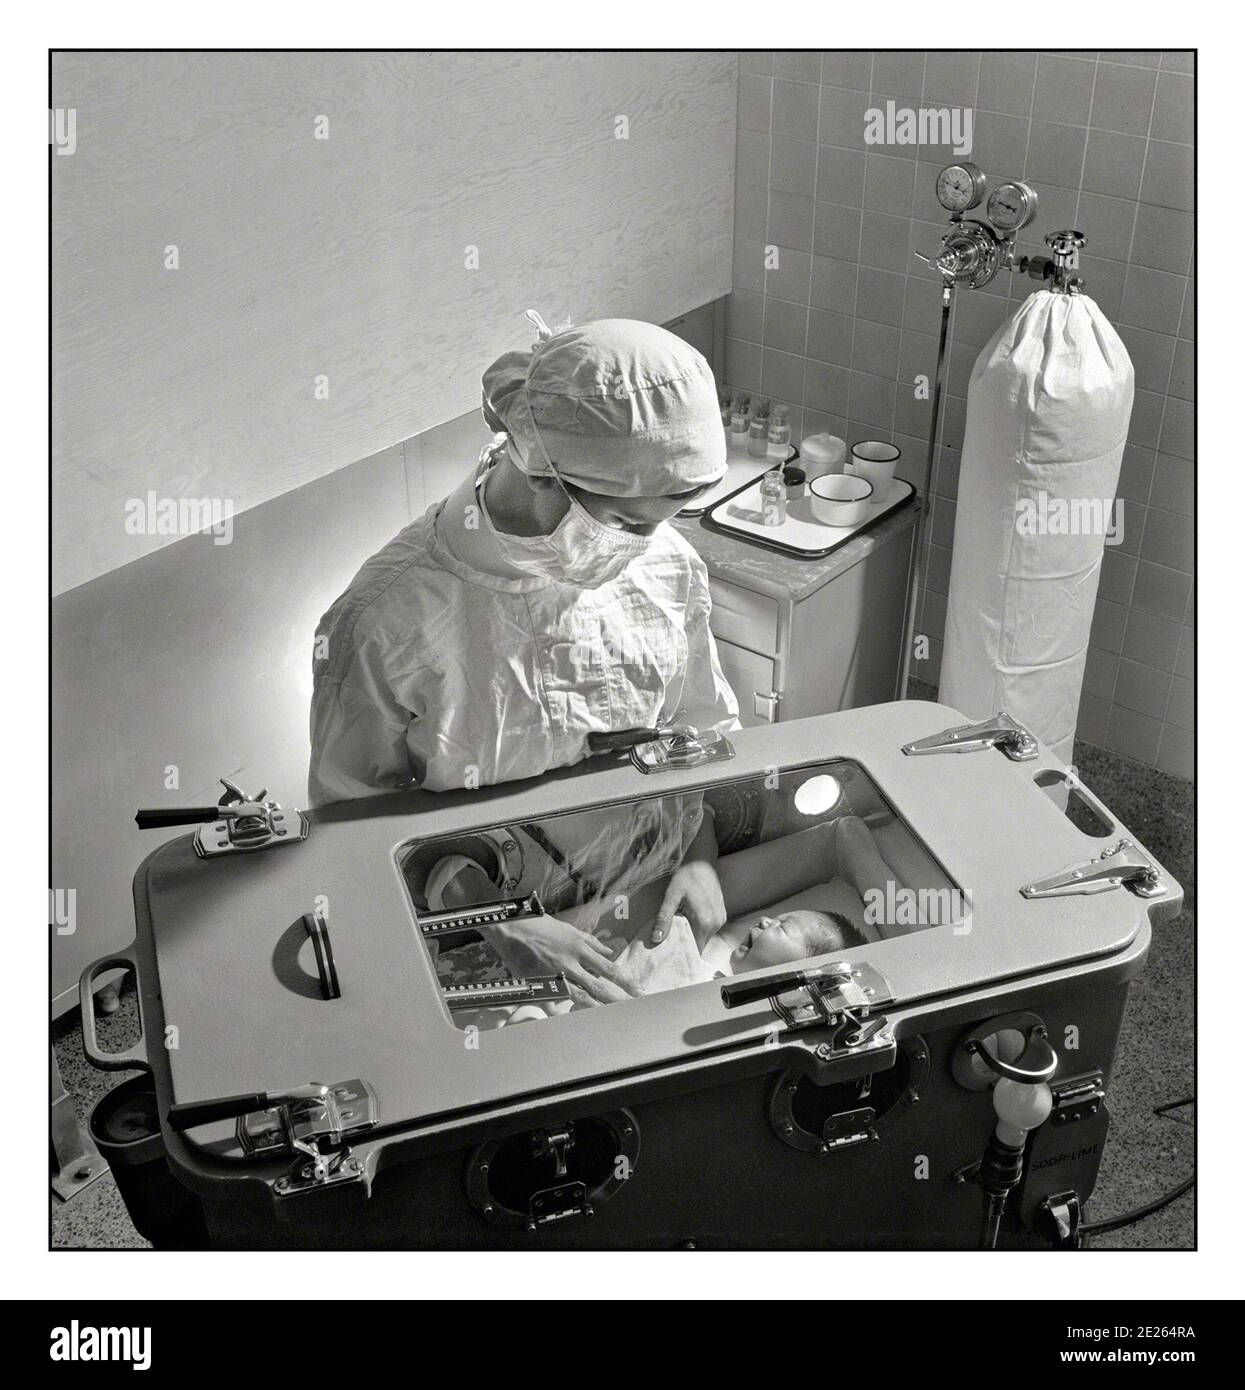 1940er INKUBATOR Krankenhaus vorzeitige Baby-Einheit November 1942. New York. Pflege von früh geborenen Babys komplizierte Verfahren, die von einer studentischen Krankenschwester gelernt werden müssen. Fütterung, Baden etc. Werden im Inkubator durchgeführt, in dem Temperatur, Feuchtigkeit und Sauerstoff mit Sauerstoffversorgung im Hintergrund sorgfältig geregelt werden müssen.“ Eine neonatale Intensivstation, auch als Intensivstation bekannt, ist eine Intensivstation, die sich auf die Betreuung von kranken oder frühgeborenen Neugeborenen spezialisiert hat. Stockfoto